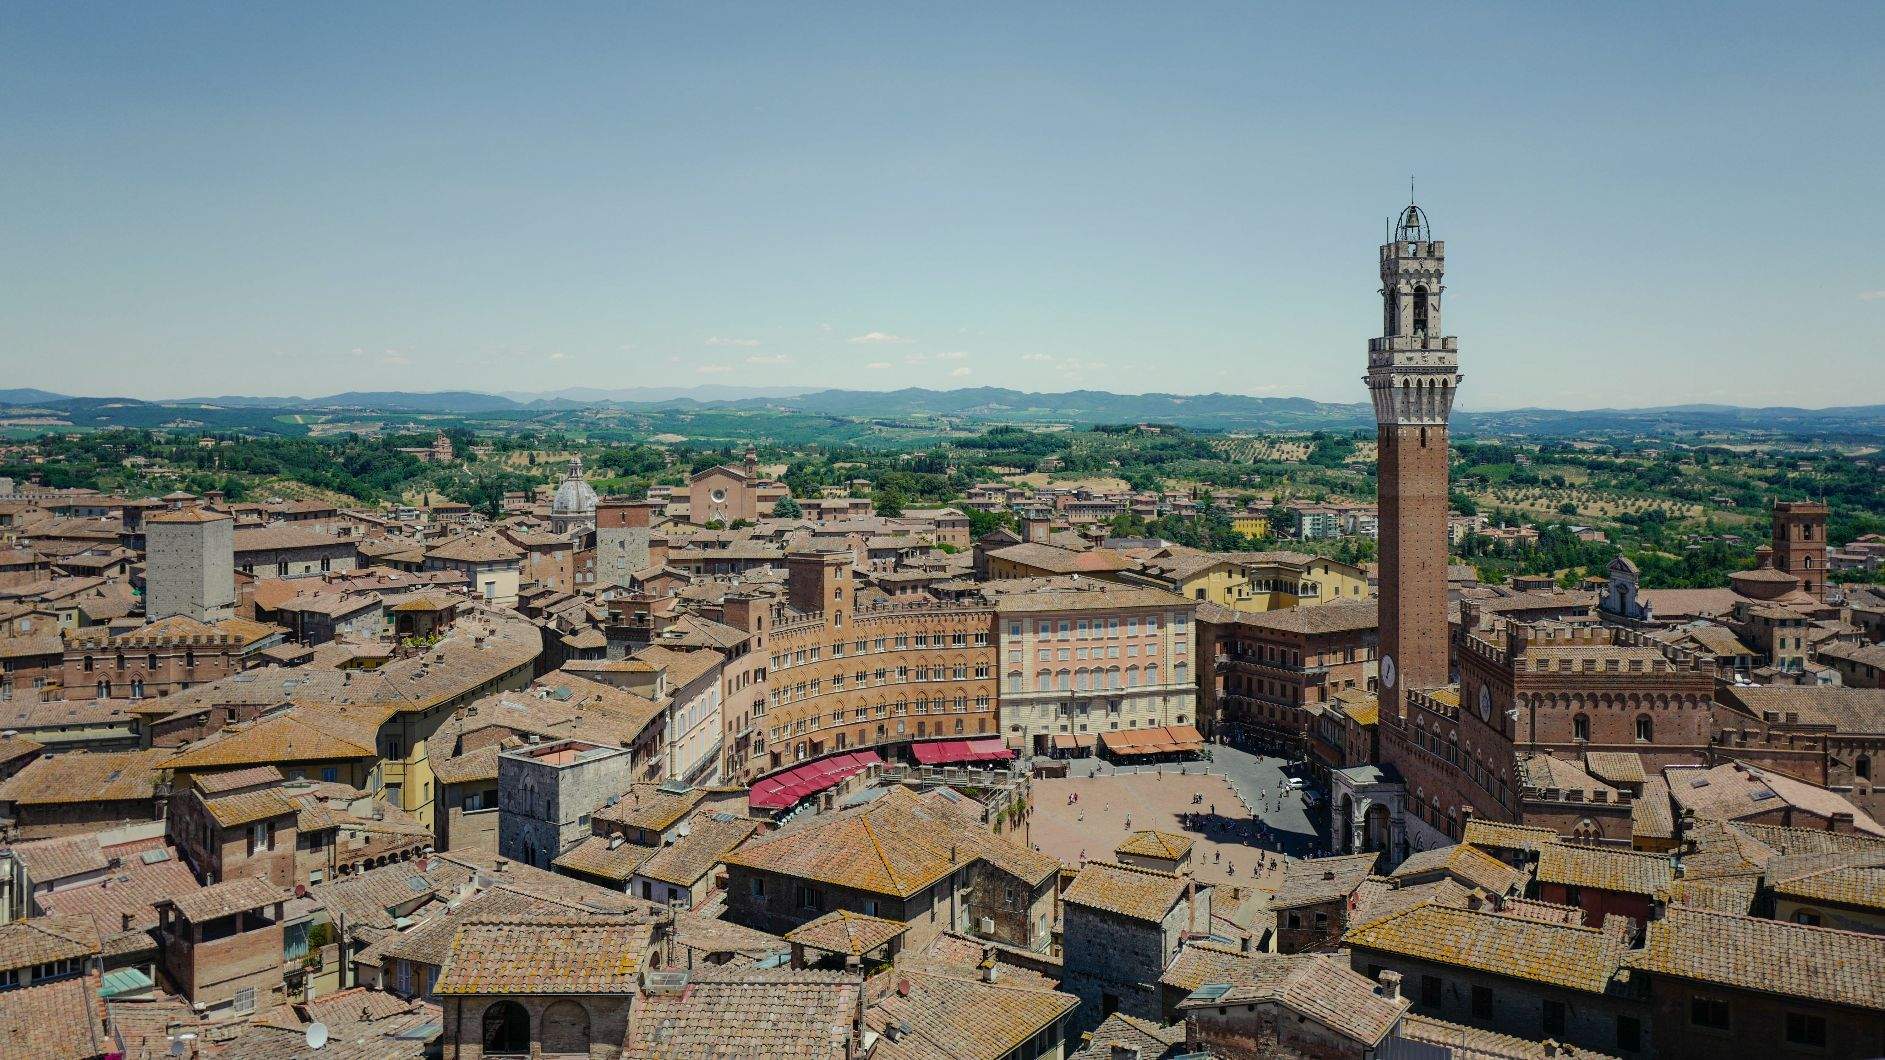 Das Bild zeigt eine atemberaubende Ansicht der Altstadt von Siena, mit ihren historischen Gebäuden, engen Gassen und dem markanten Turm, der majestätisch in den Himmel ragt. Die Dächer der Gebäude sind in verschiedenen Braun- und Ockertönen gehalten, was ein Gefühl von Wärme und Geschichte vermittelt. Im Hintergrund erstreckt sich eine malerische Landschaft, die die zeitlose Schönheit dieser italienischen Stadt unterstreicht. Siena ist eine Stadt in der italienischen Region Toskana und bekannt für ihre historische Altstadt, die auf der Liste der UNESCO-Weltkulturerbe Stätten steht. Die Stadt hat rund 54.000 Einwohner und ist berühmt für ihre mittelalterliche Architektur, darunter der imposante Dom und der weltberühmte Piazza del Campo.